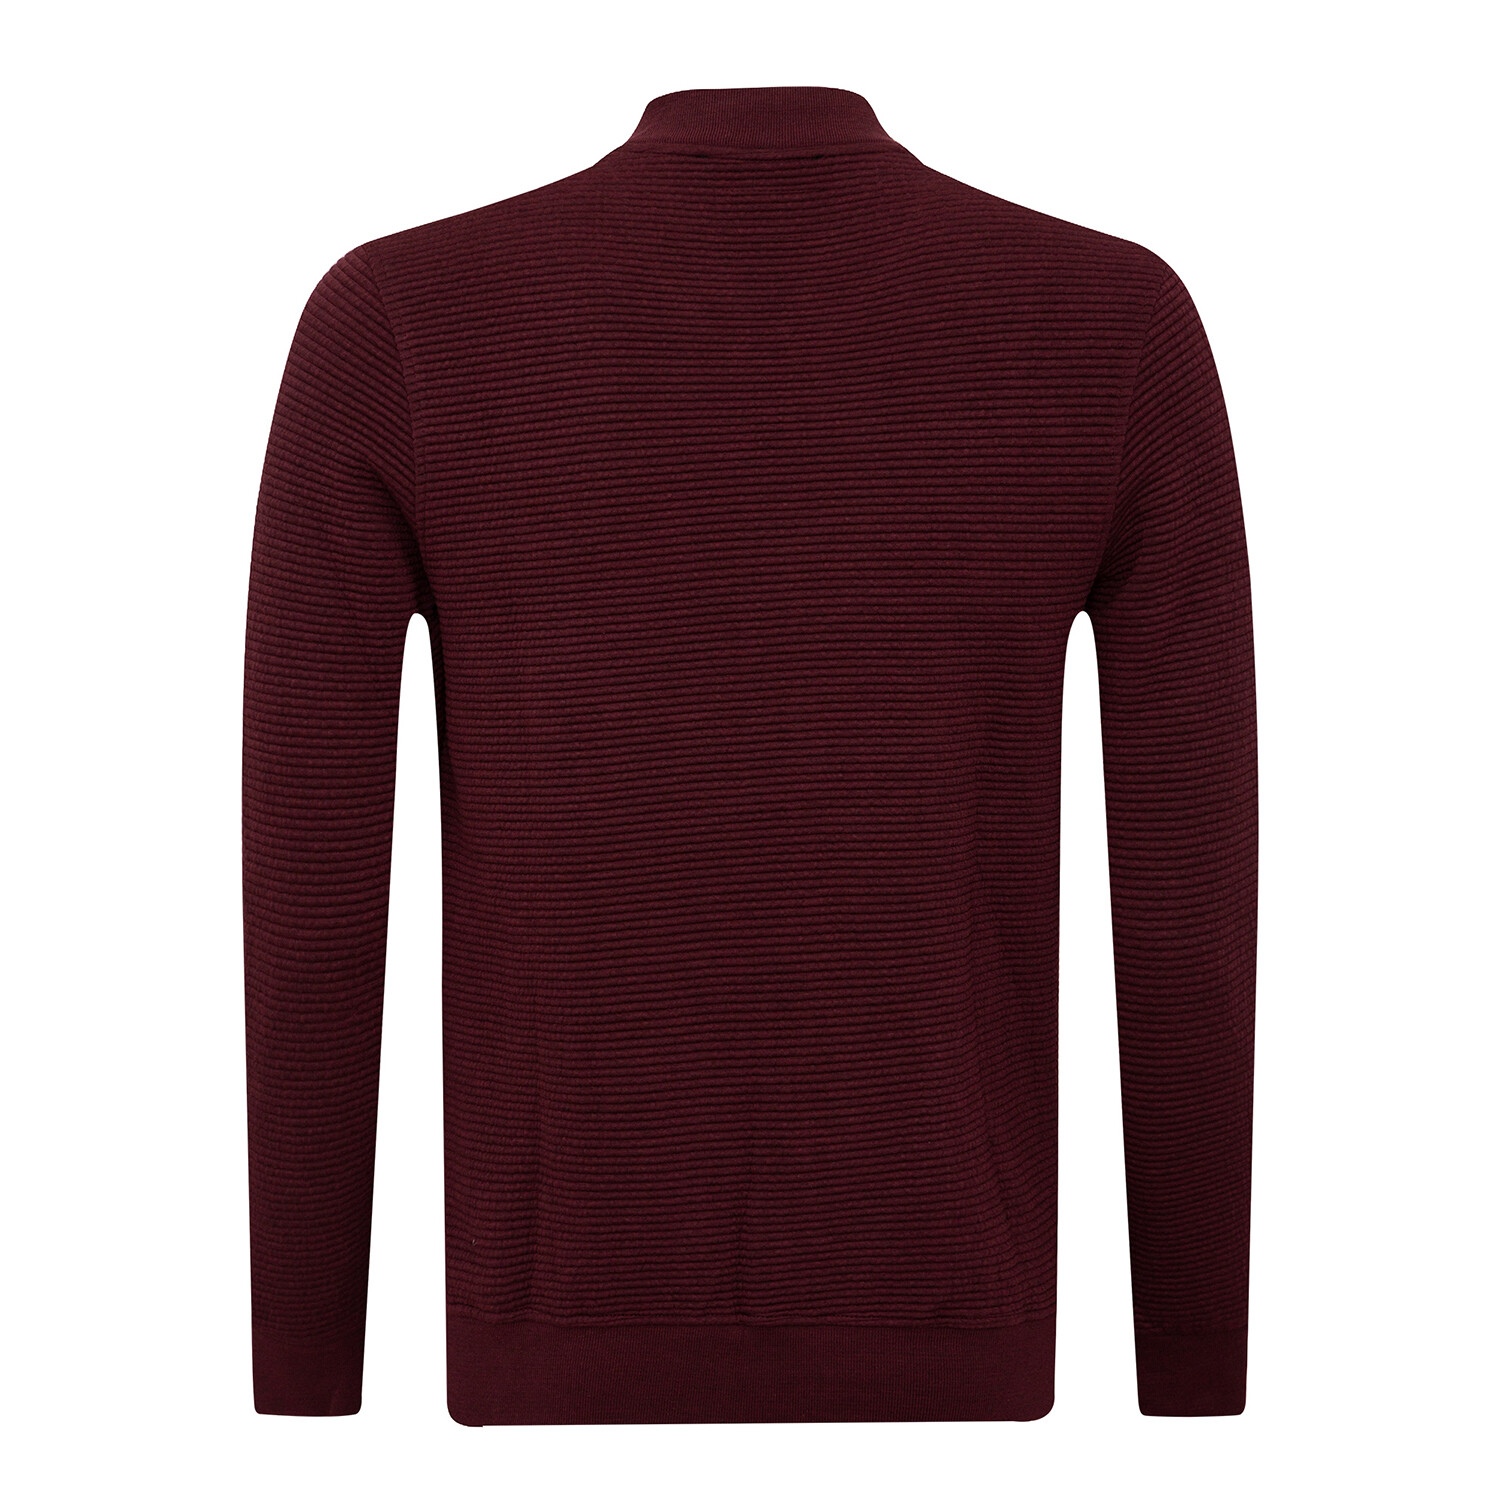 İIslandia College Collar Zip Up Sweatshirt // Bordeaux (XL) - Sir ...